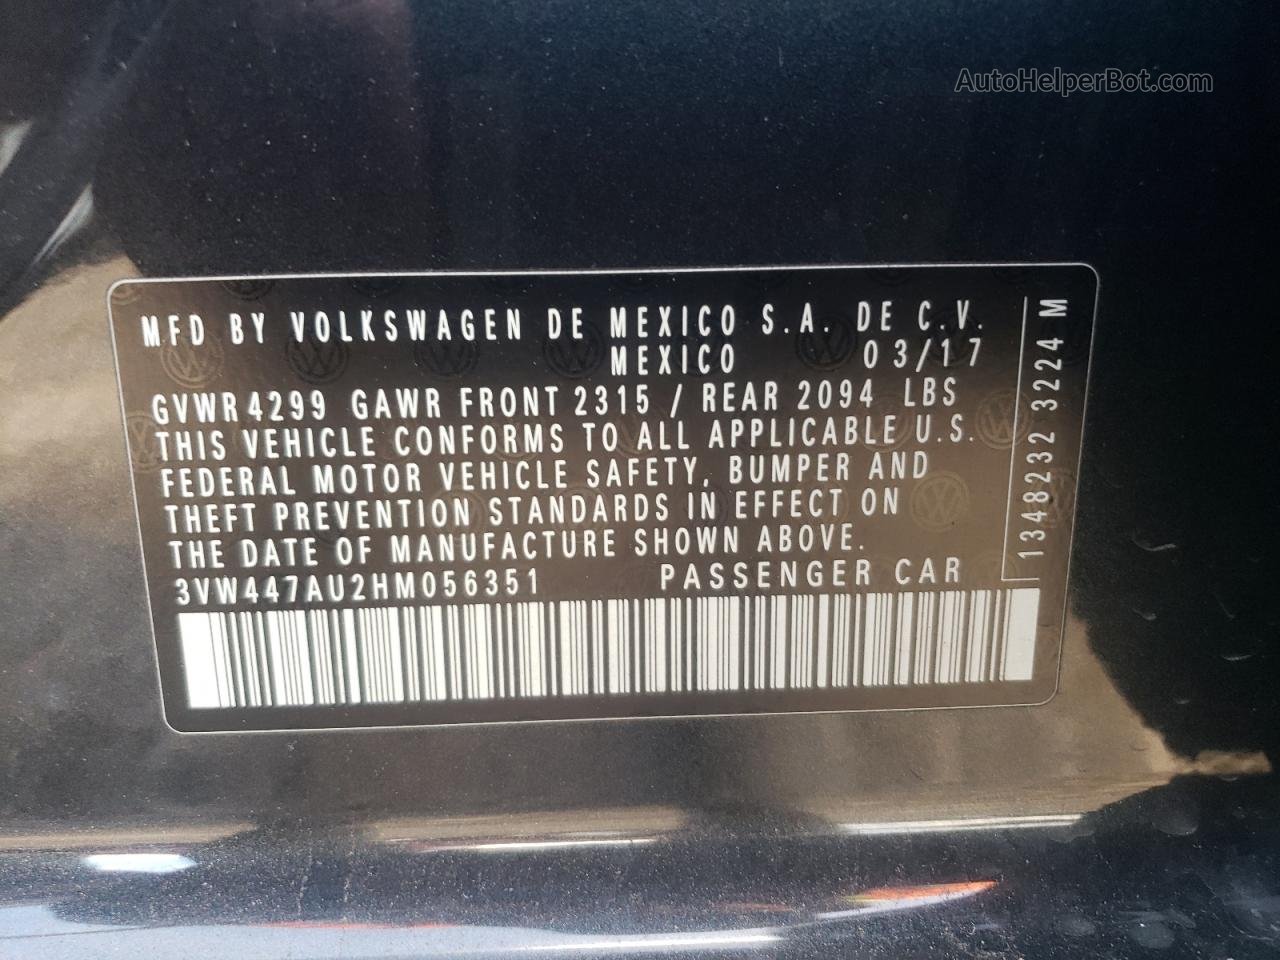 2017 Volkswagen Gti S/se Угольный vin: 3VW447AU2HM056351